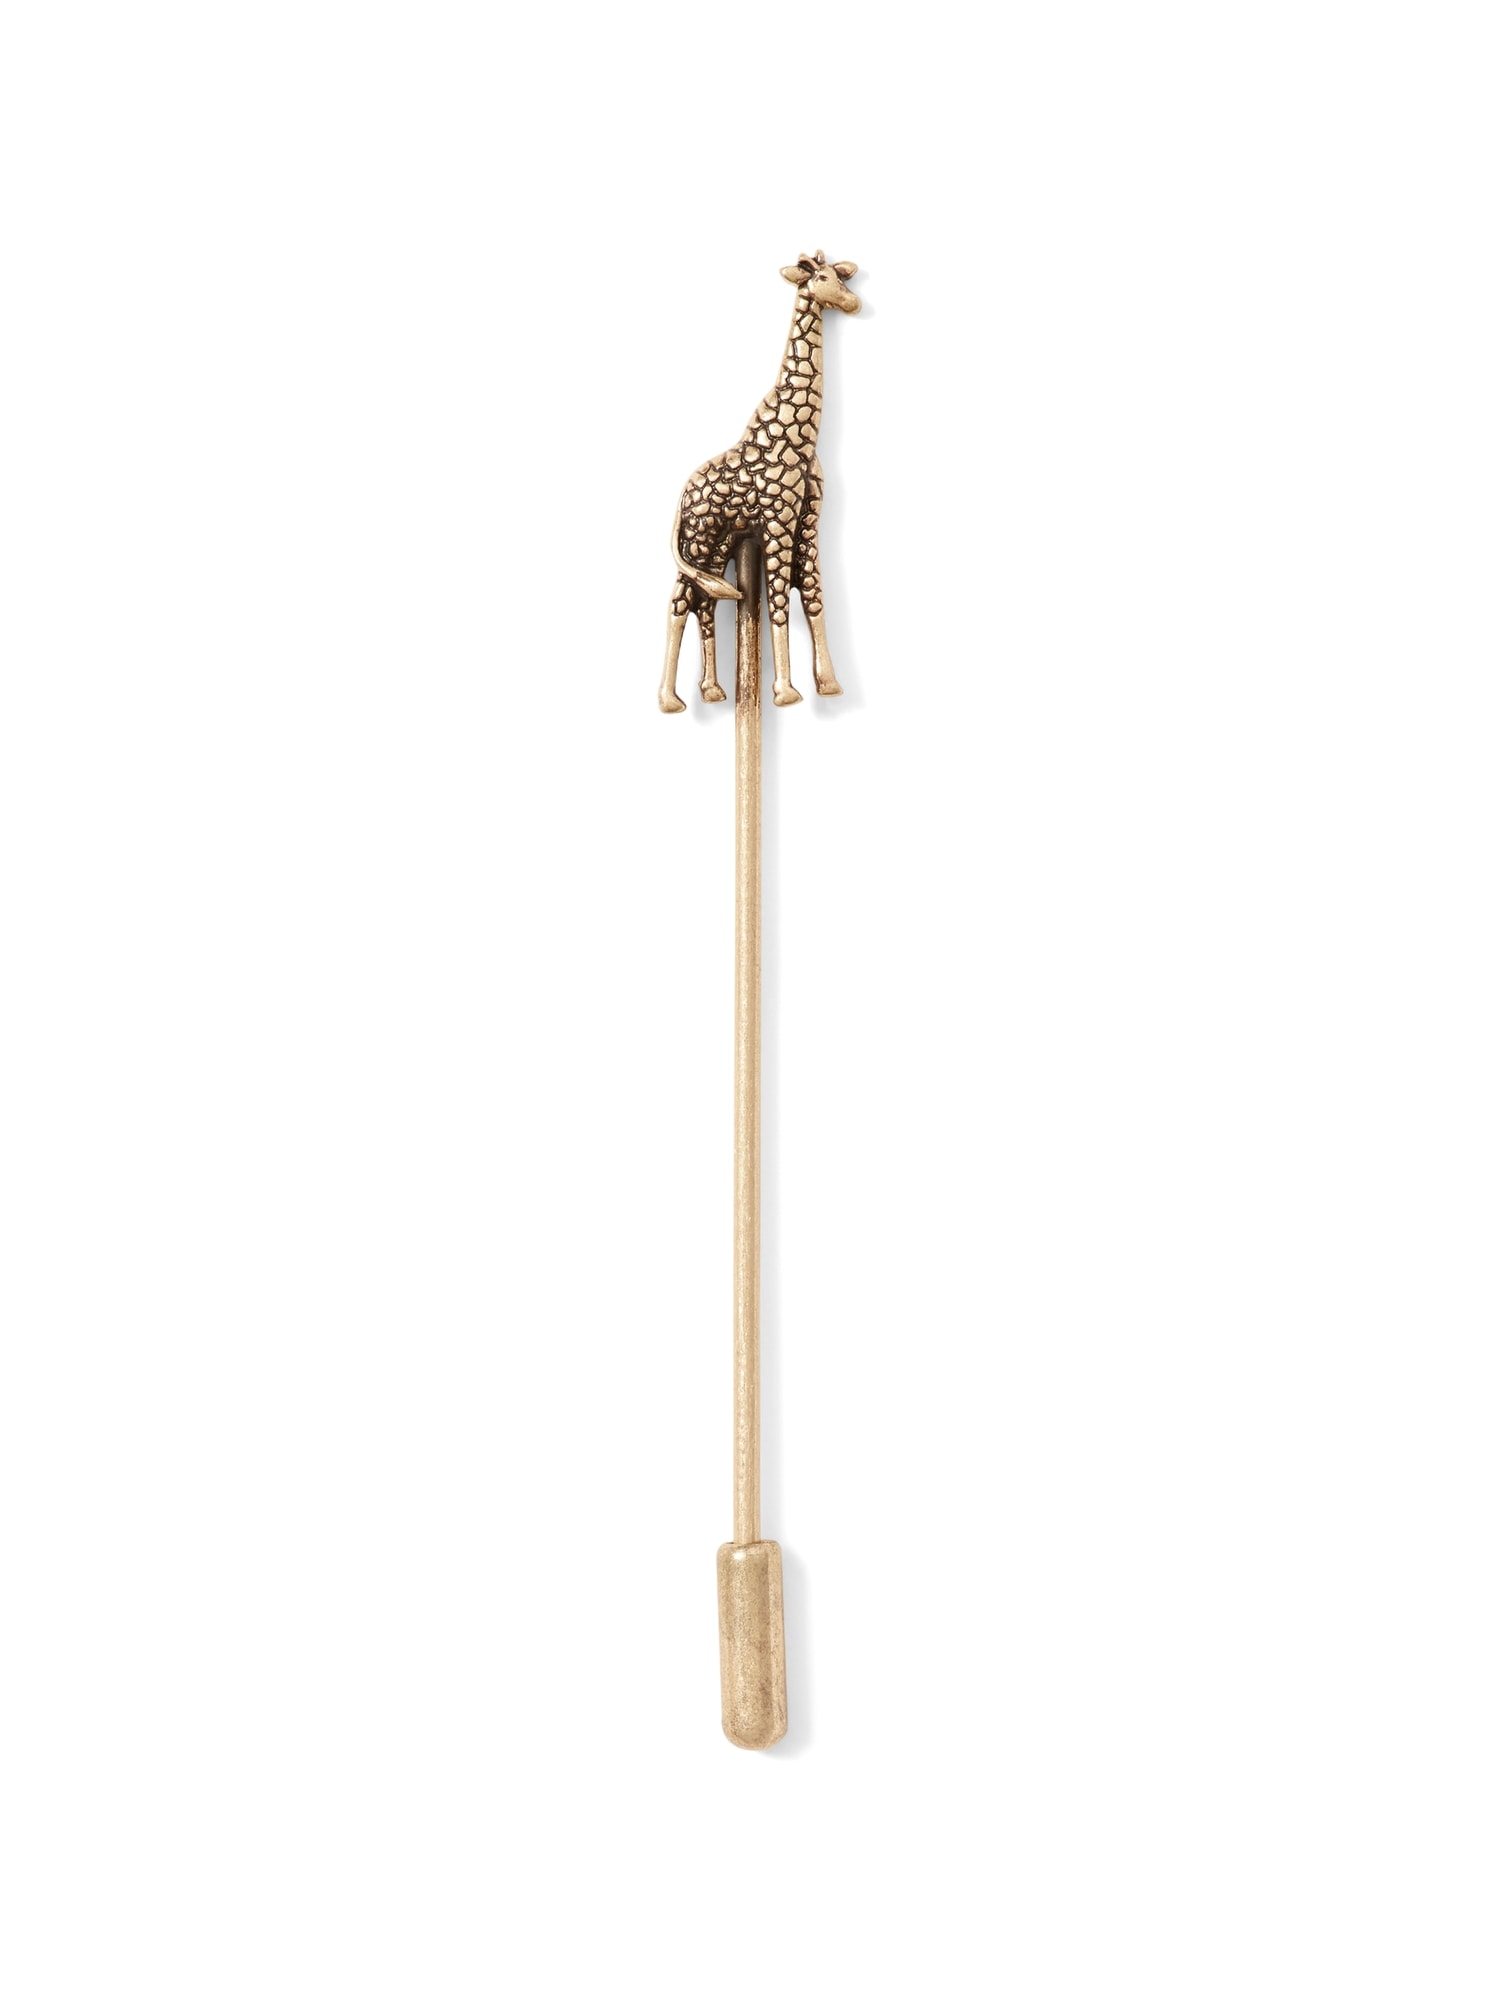 Giraffe Lapel Pin